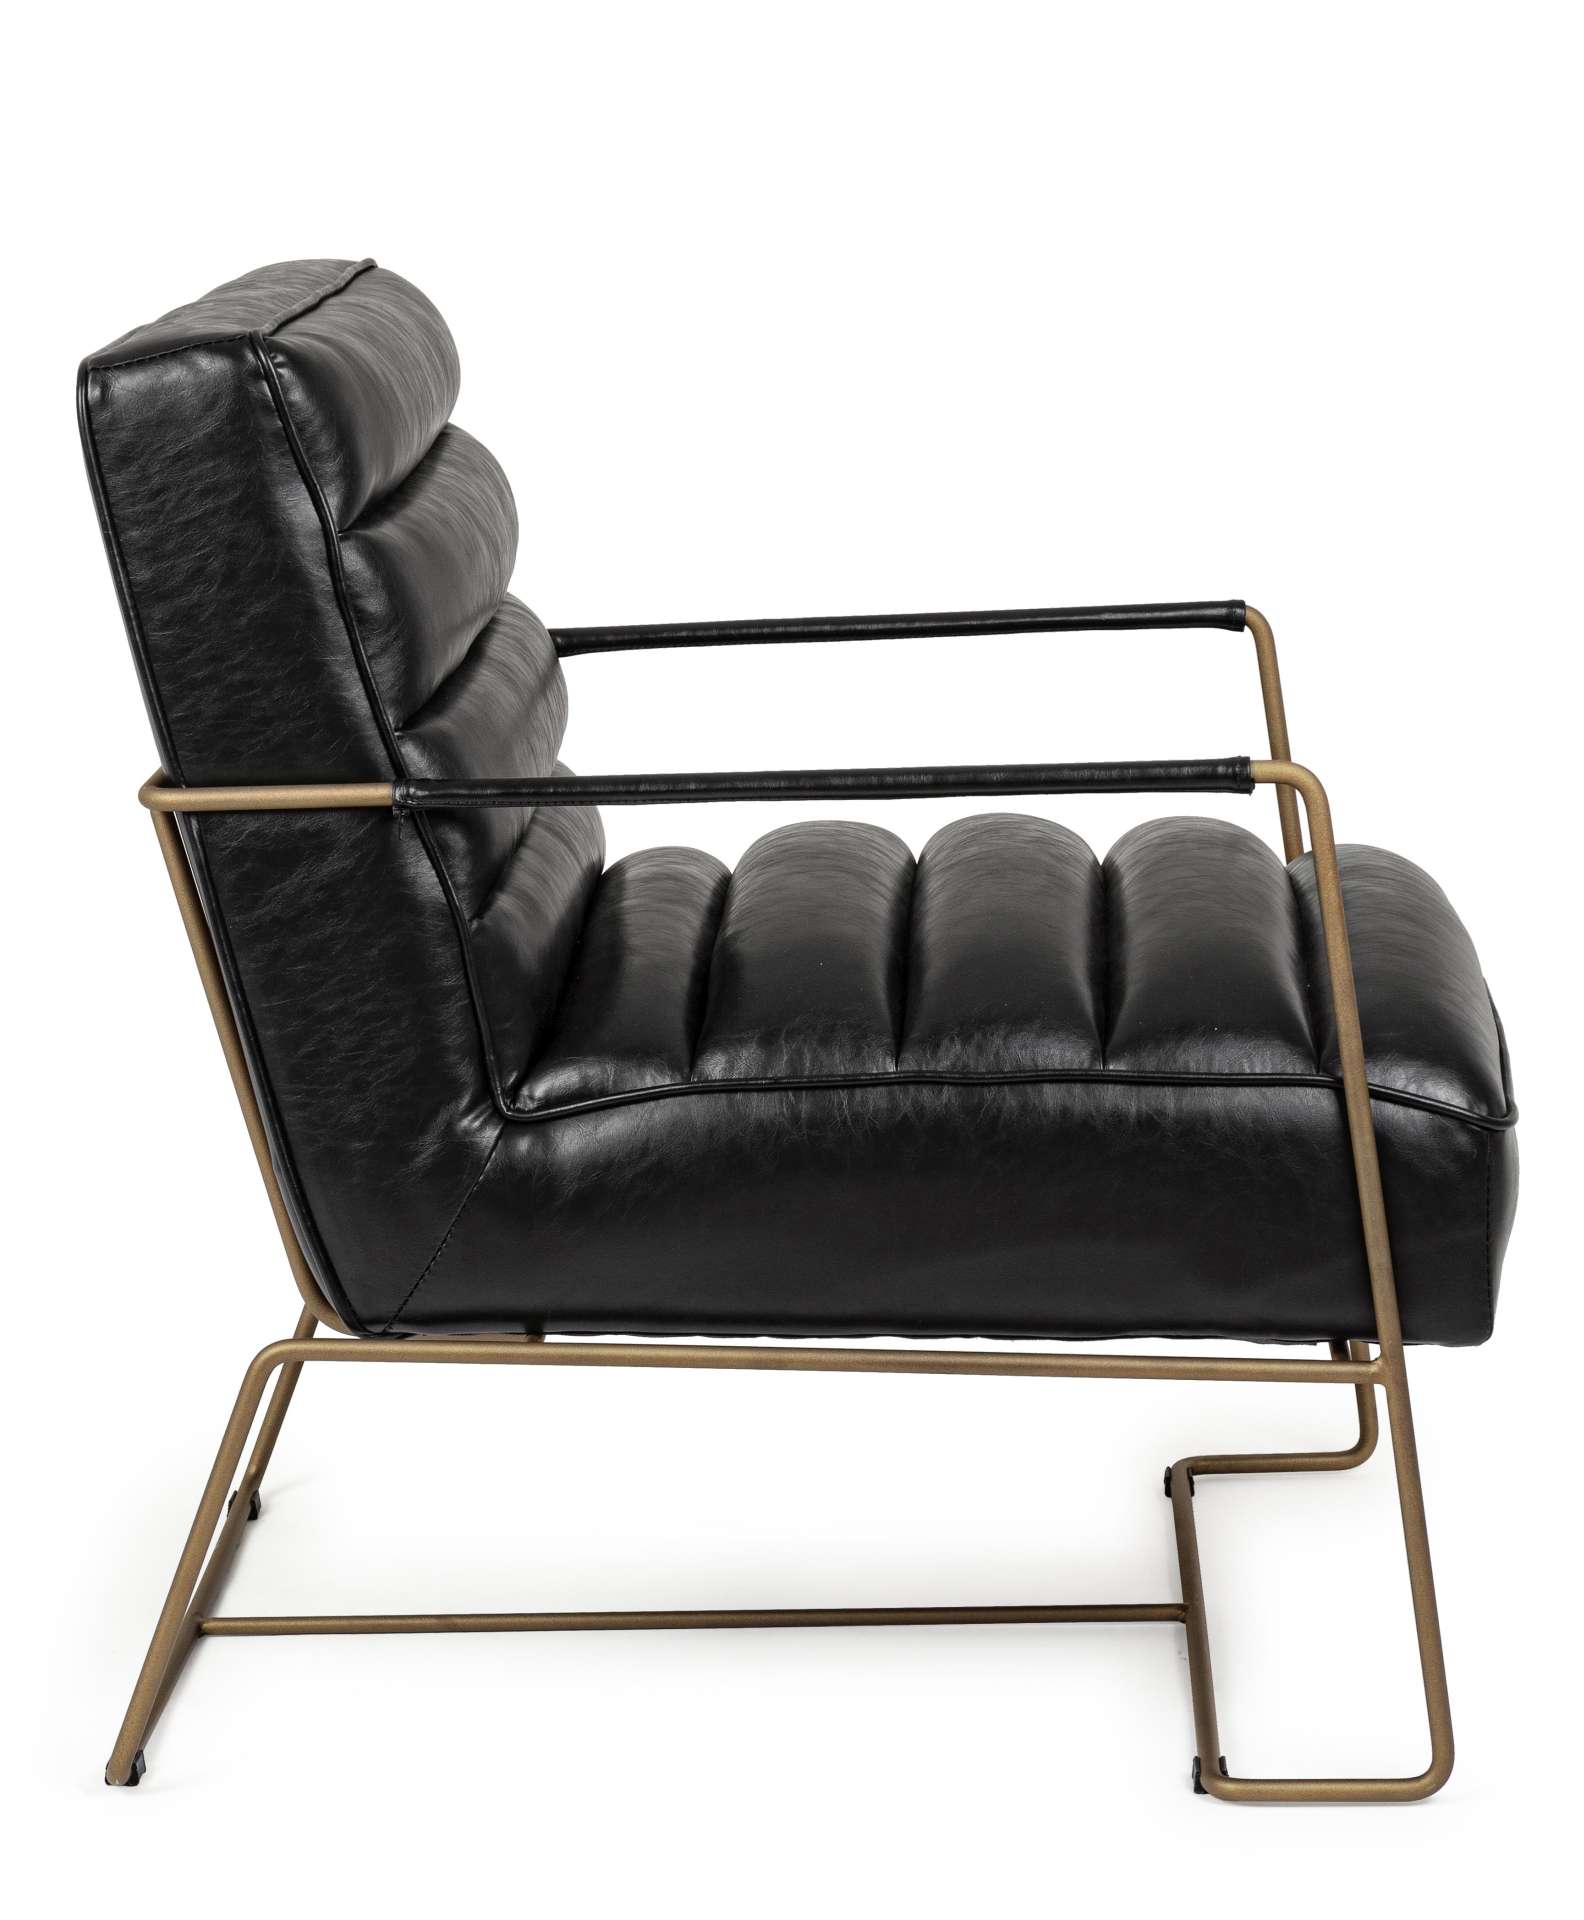 Der Sessel Brianna überzeugt mit seinem klassischen Design. Gefertigt wurde er aus Kunstleder, welches einen schwarzen Farbton besitzt. Das Gestell ist aus Metall und hat eine goldene Farbe. Der Sessel besitzt eine Sitzhöhe von 45 cm. Die Breite beträgt 6